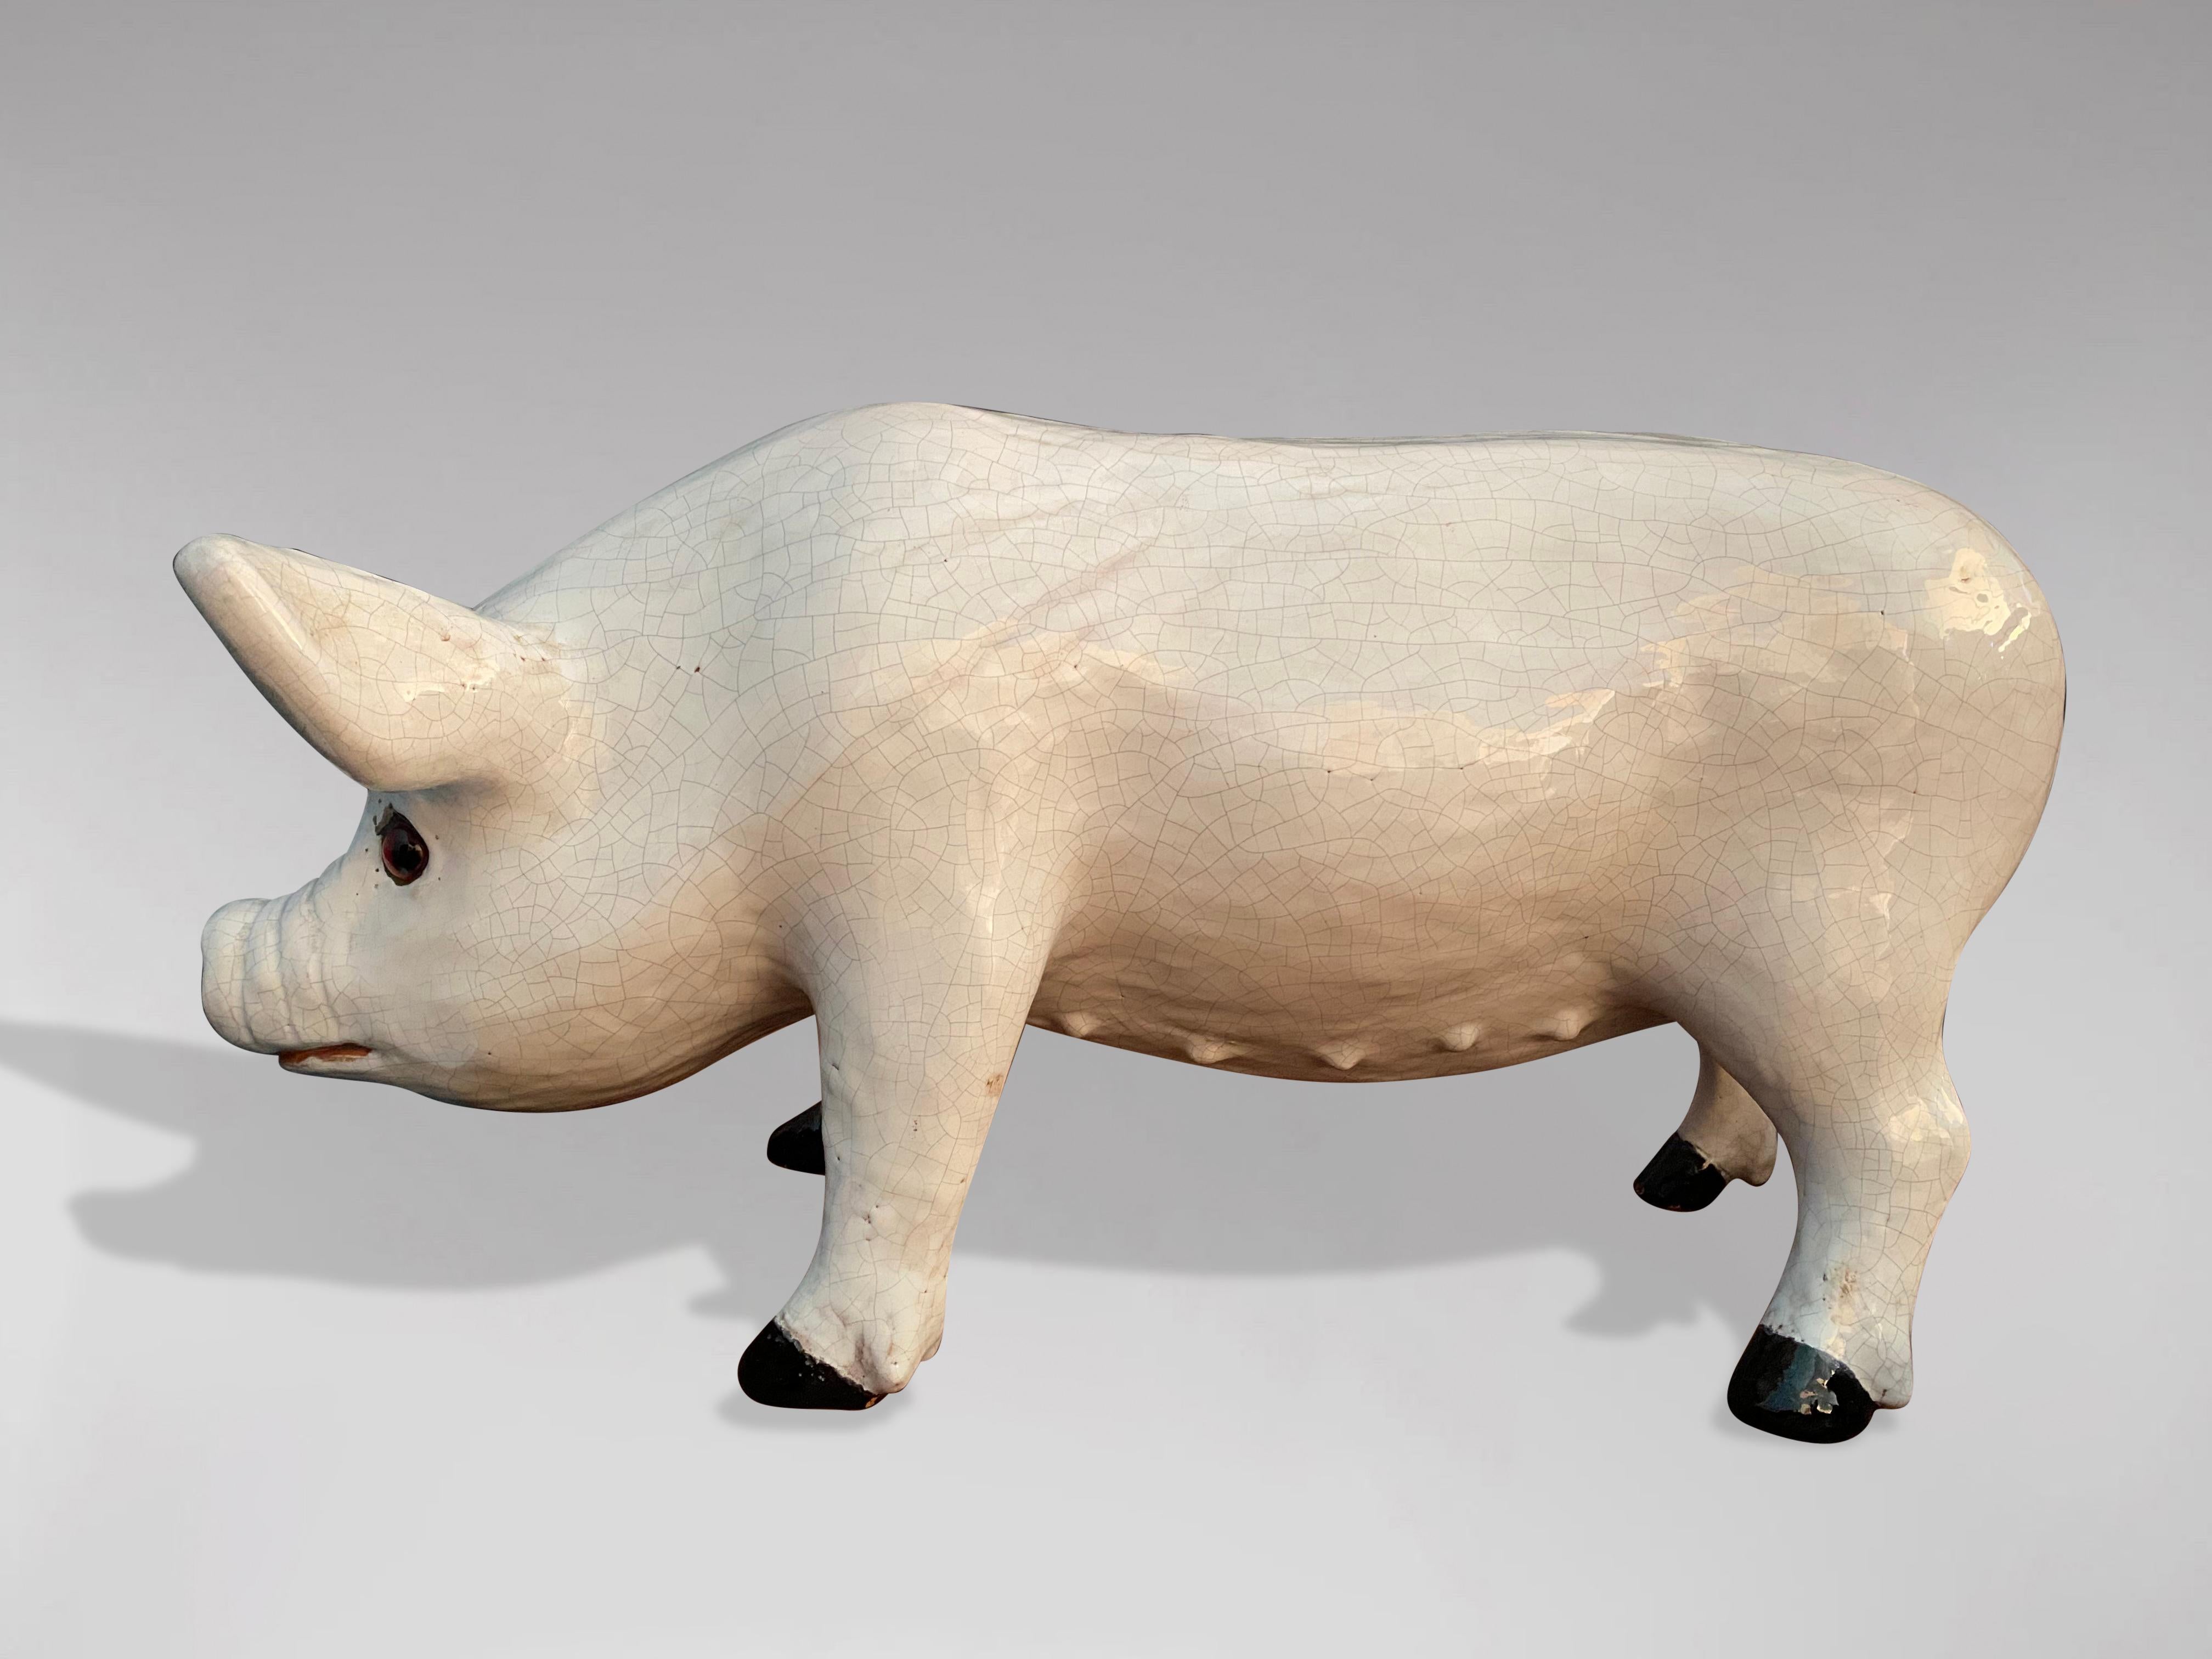 Magnifique sculpture de cochon en faïence de la fin du 19e siècle provenant de Bavent en Normandie. Le pig de différentes nuances de blanc ainsi que son aspect expressif témoignent de la qualité de son artisanat. En parfait état d'origine avec une